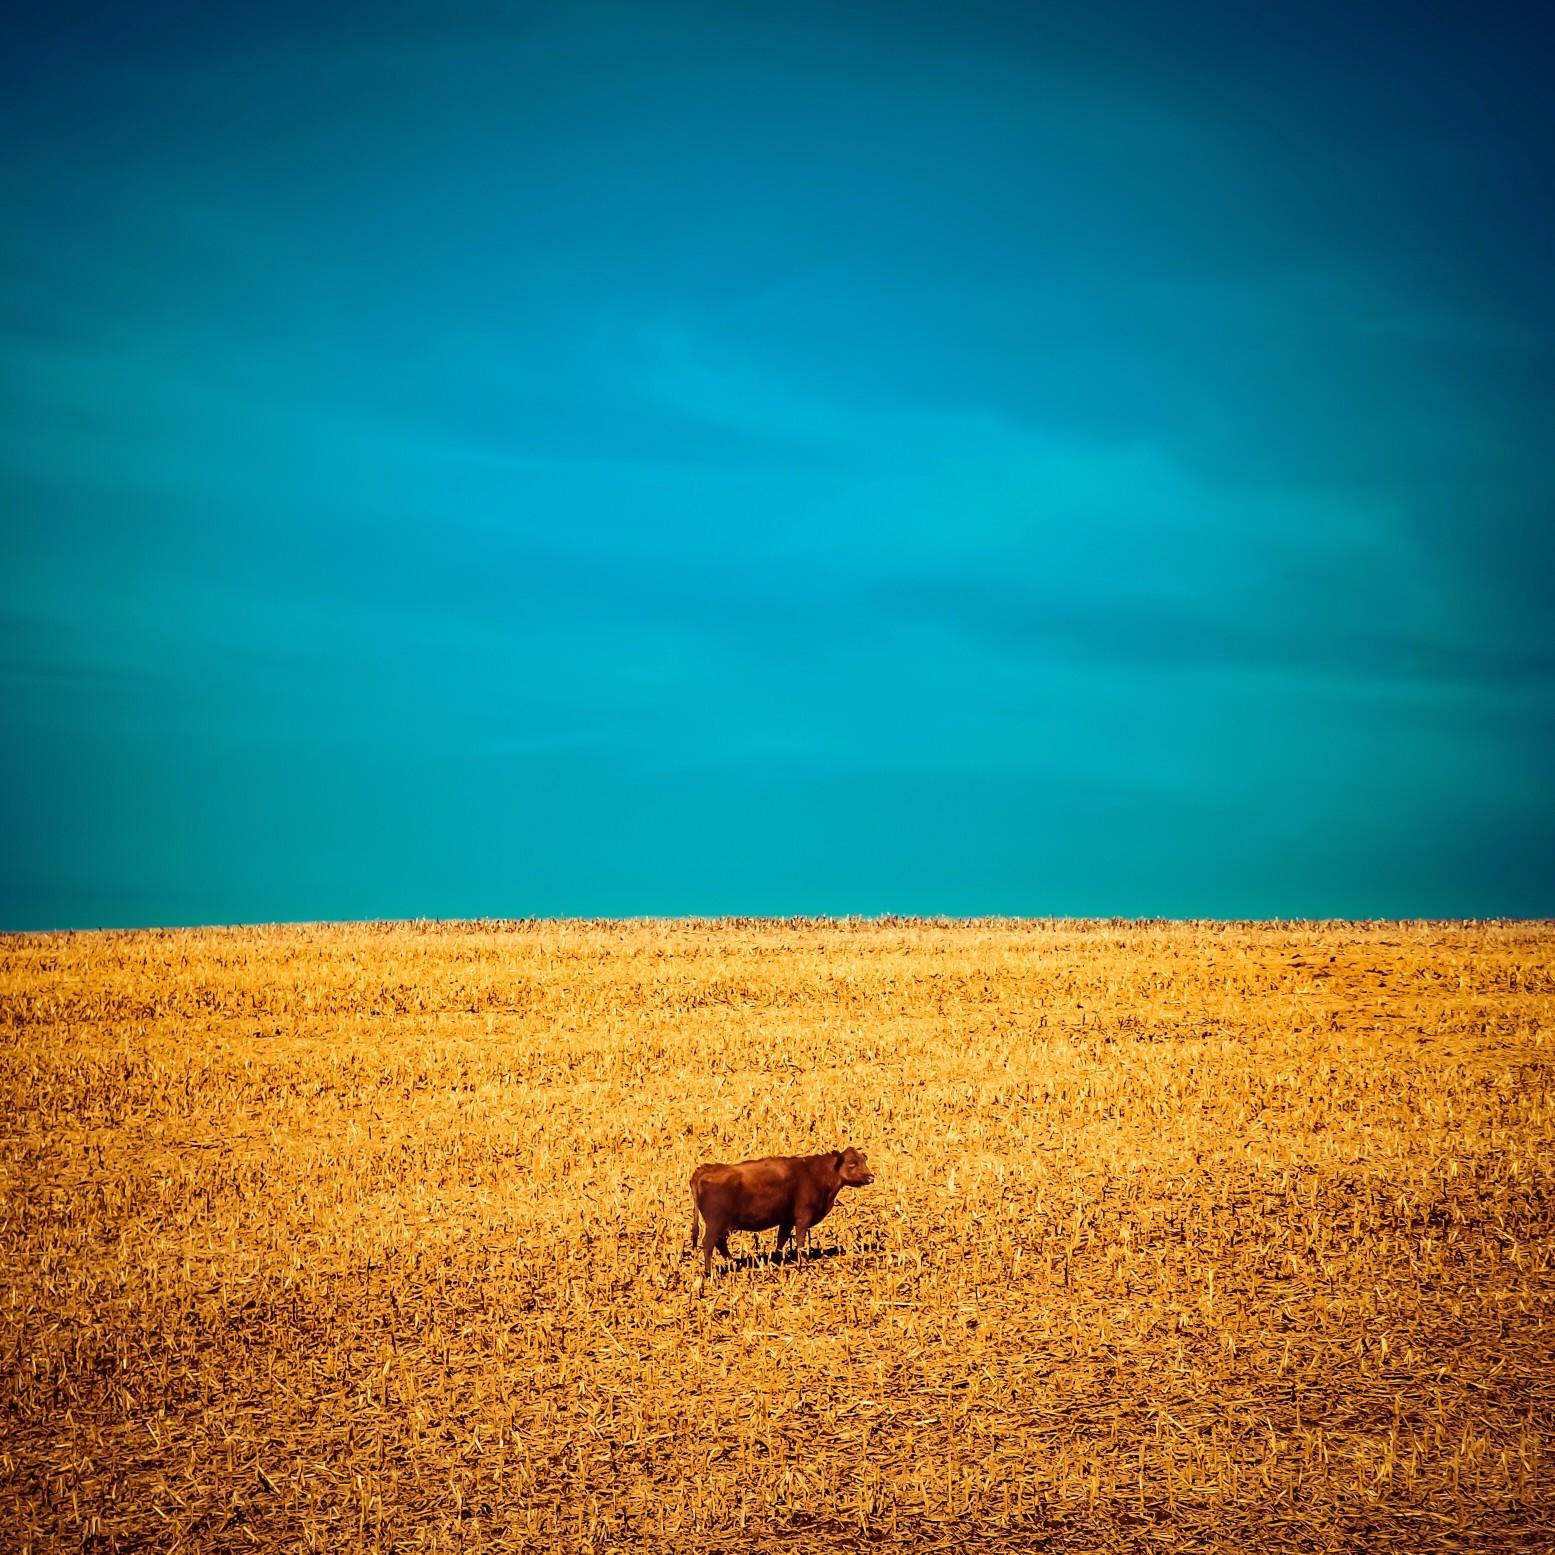 Cow in a field below a blue sky